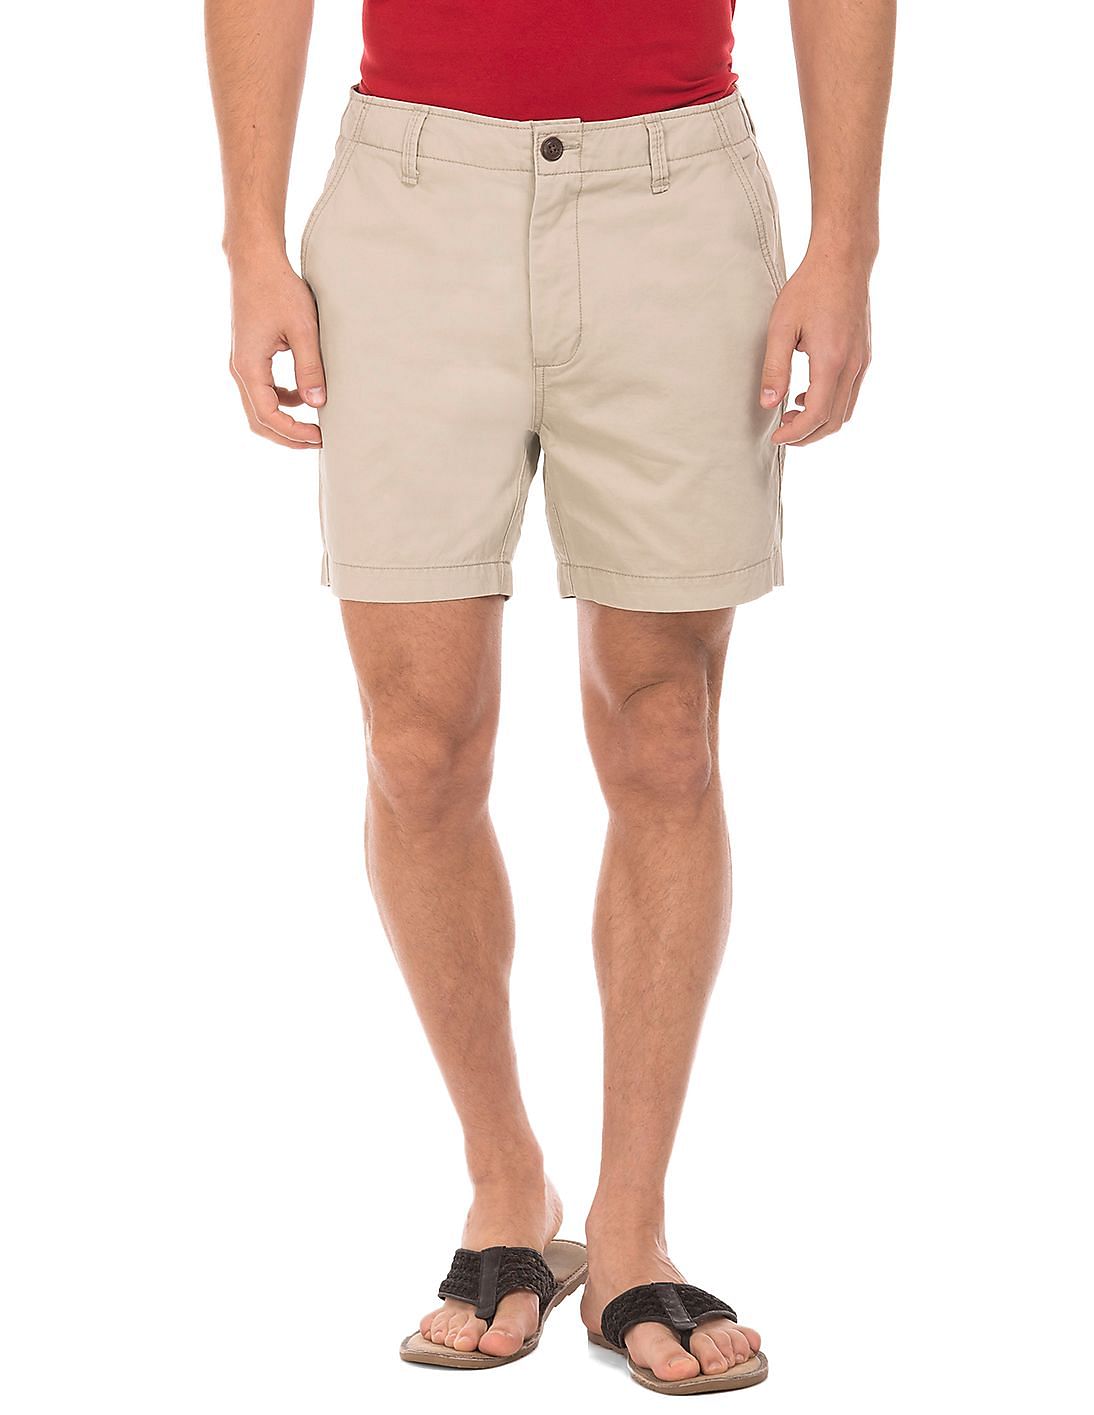 Buy Aeropostale Solid Regular Fit Twill Shorts - NNNOW.com